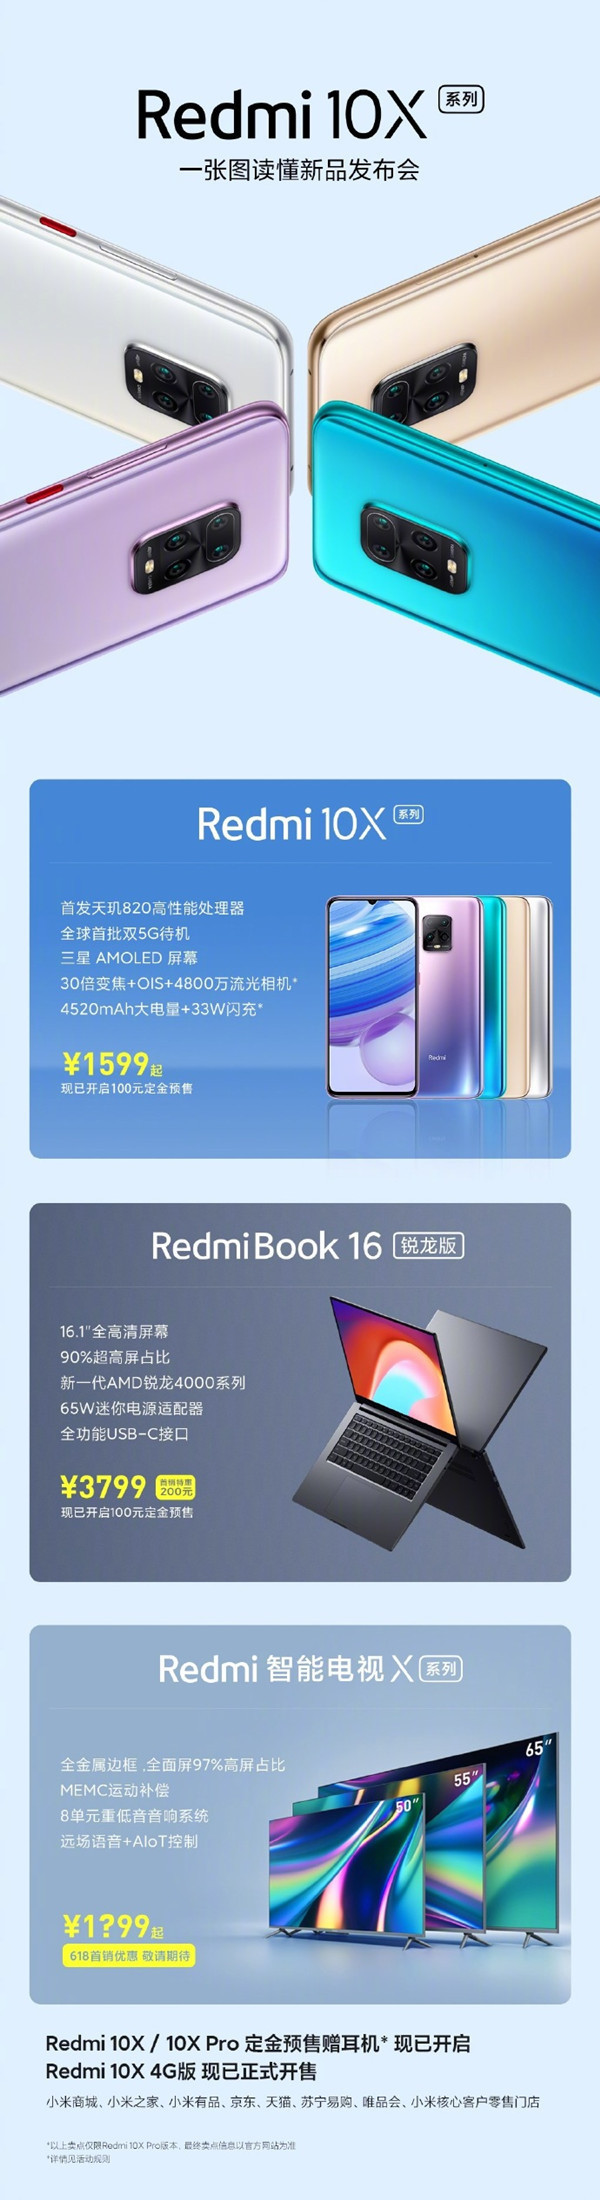 品牌手机品牌排行榜-图1了解Redmi  10X系列新品发布会：多款新品从999元开始。  第2张